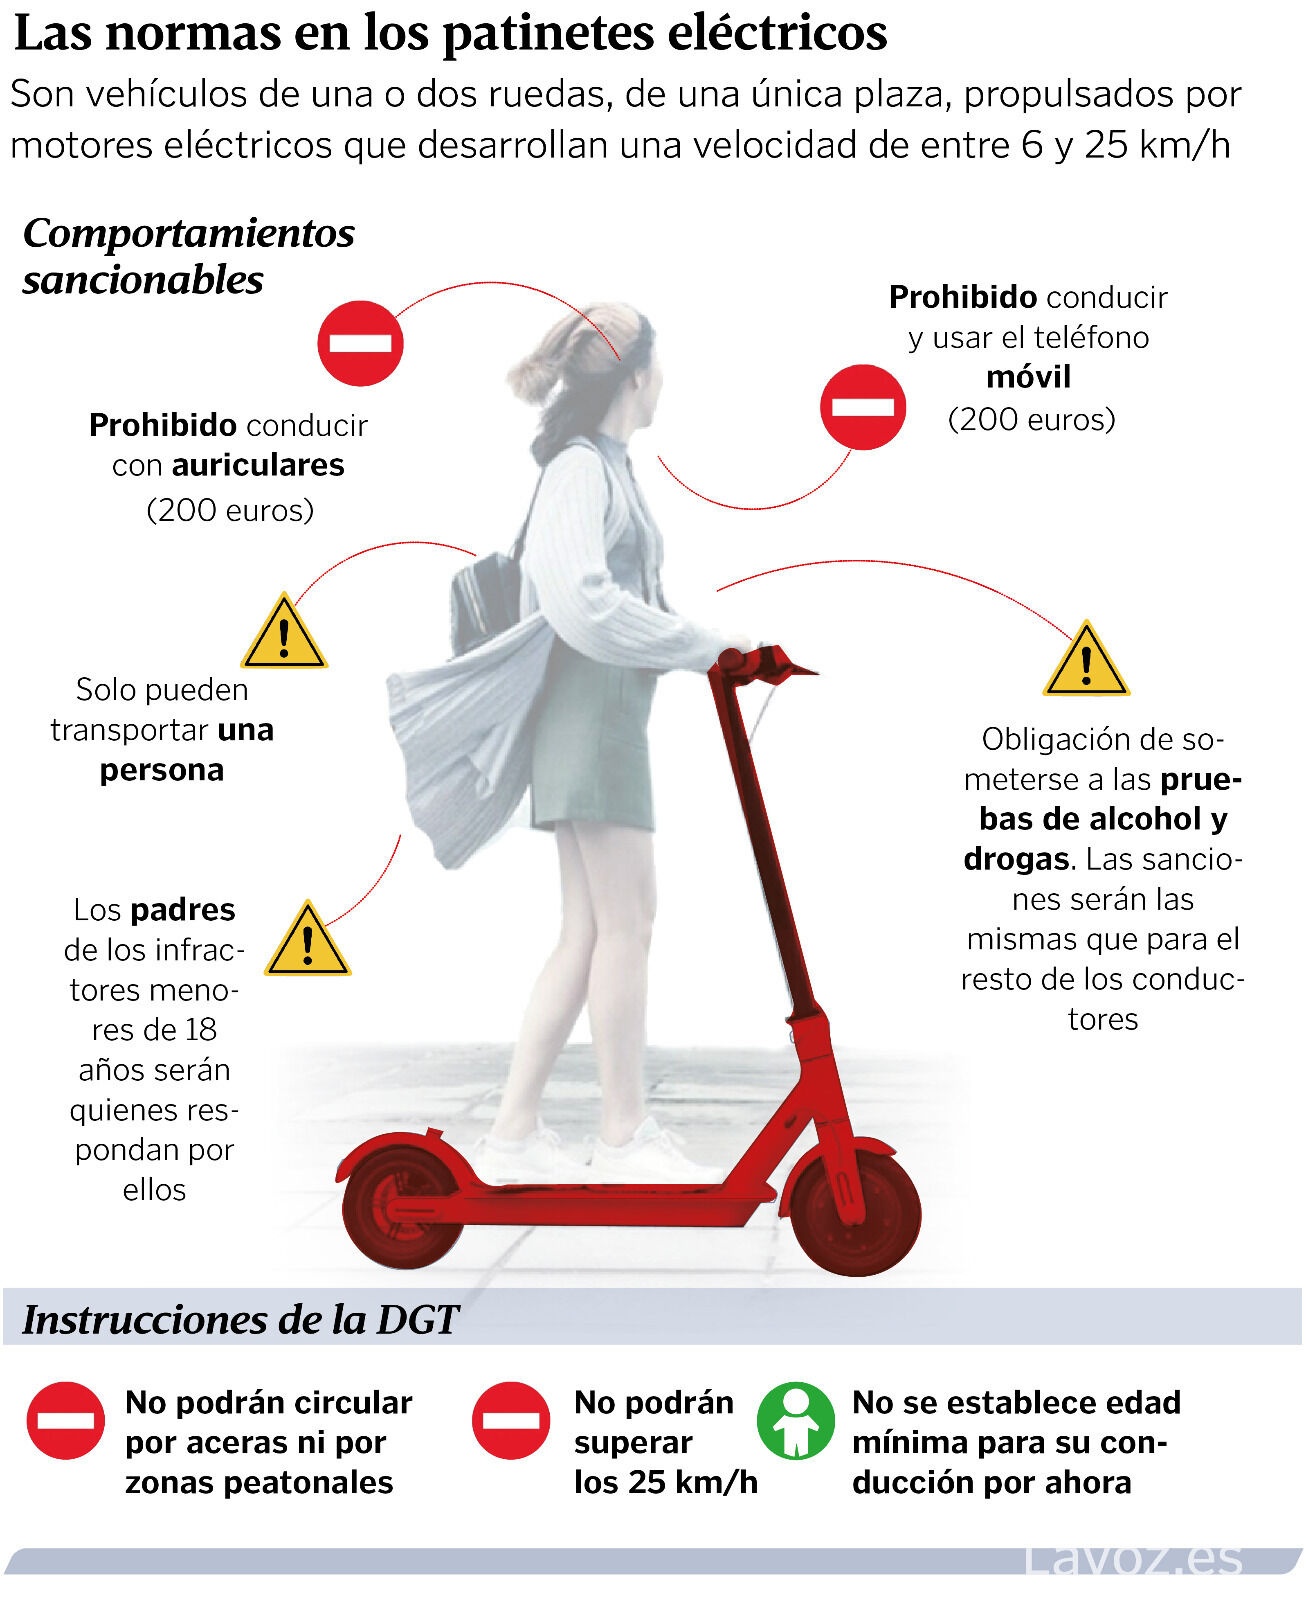 Campaña informativa normas circulación patinetes - Infografía de Lavoz.es